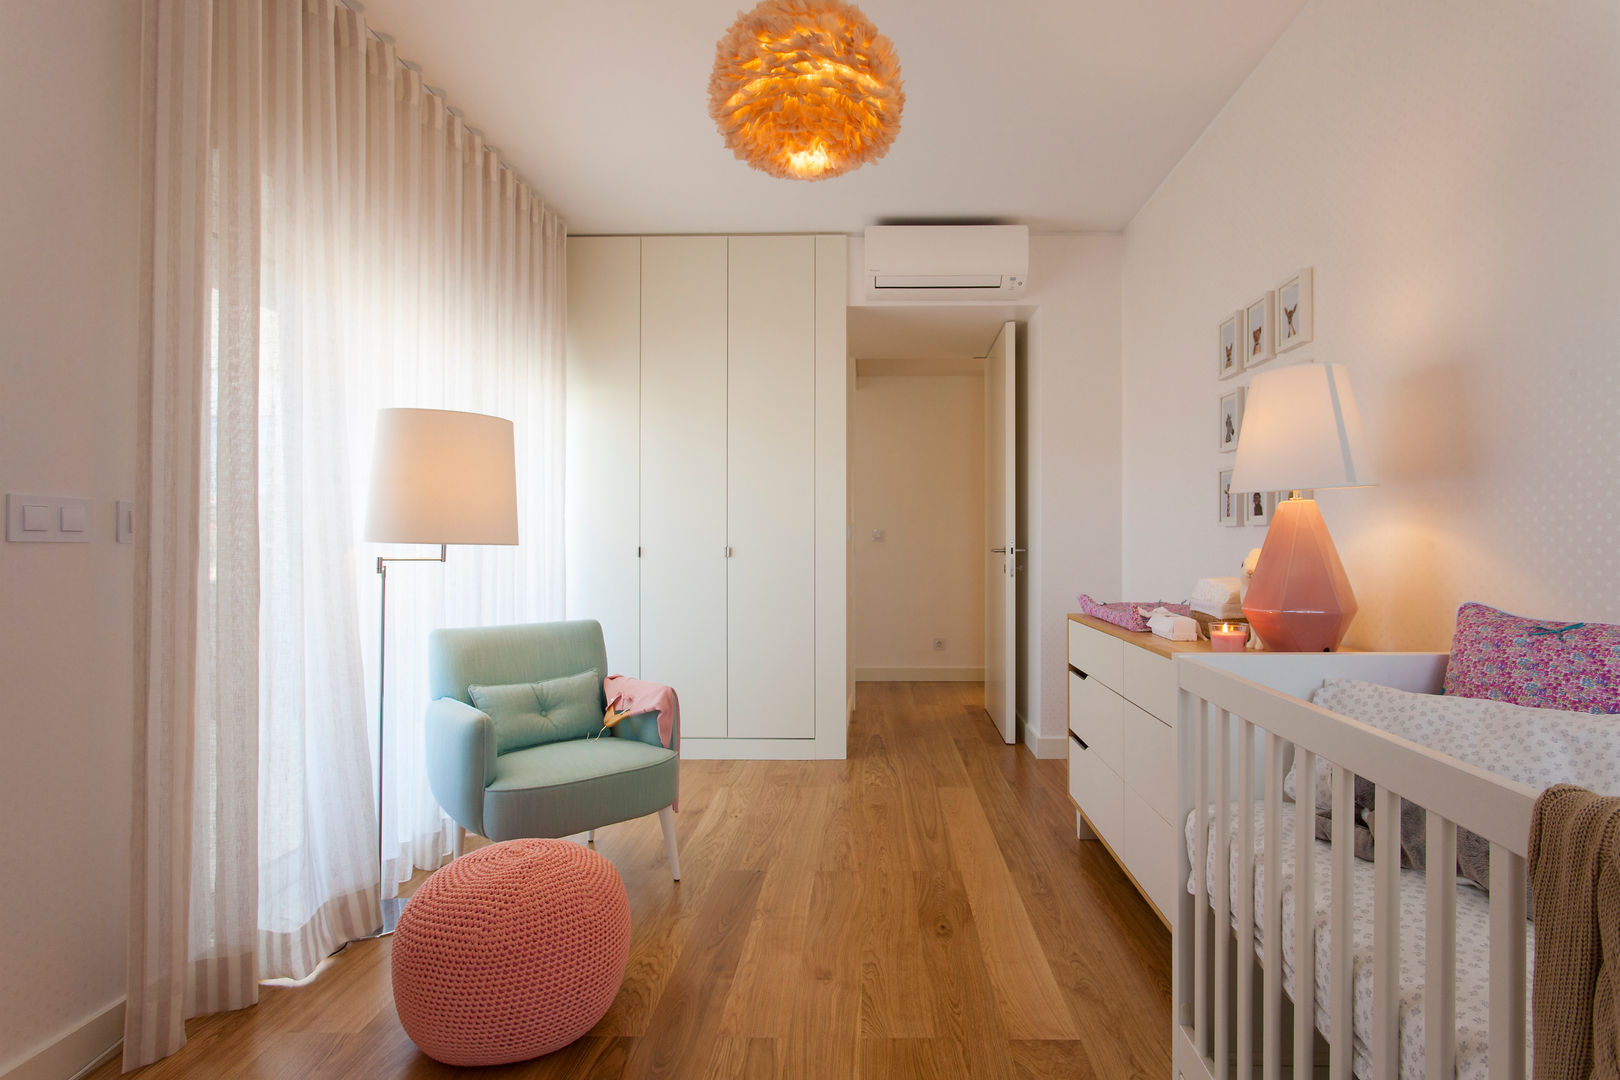 Andar Modelo - Oeiras, Traço Magenta - Design de Interiores Traço Magenta - Design de Interiores Dormitorios infantiles modernos